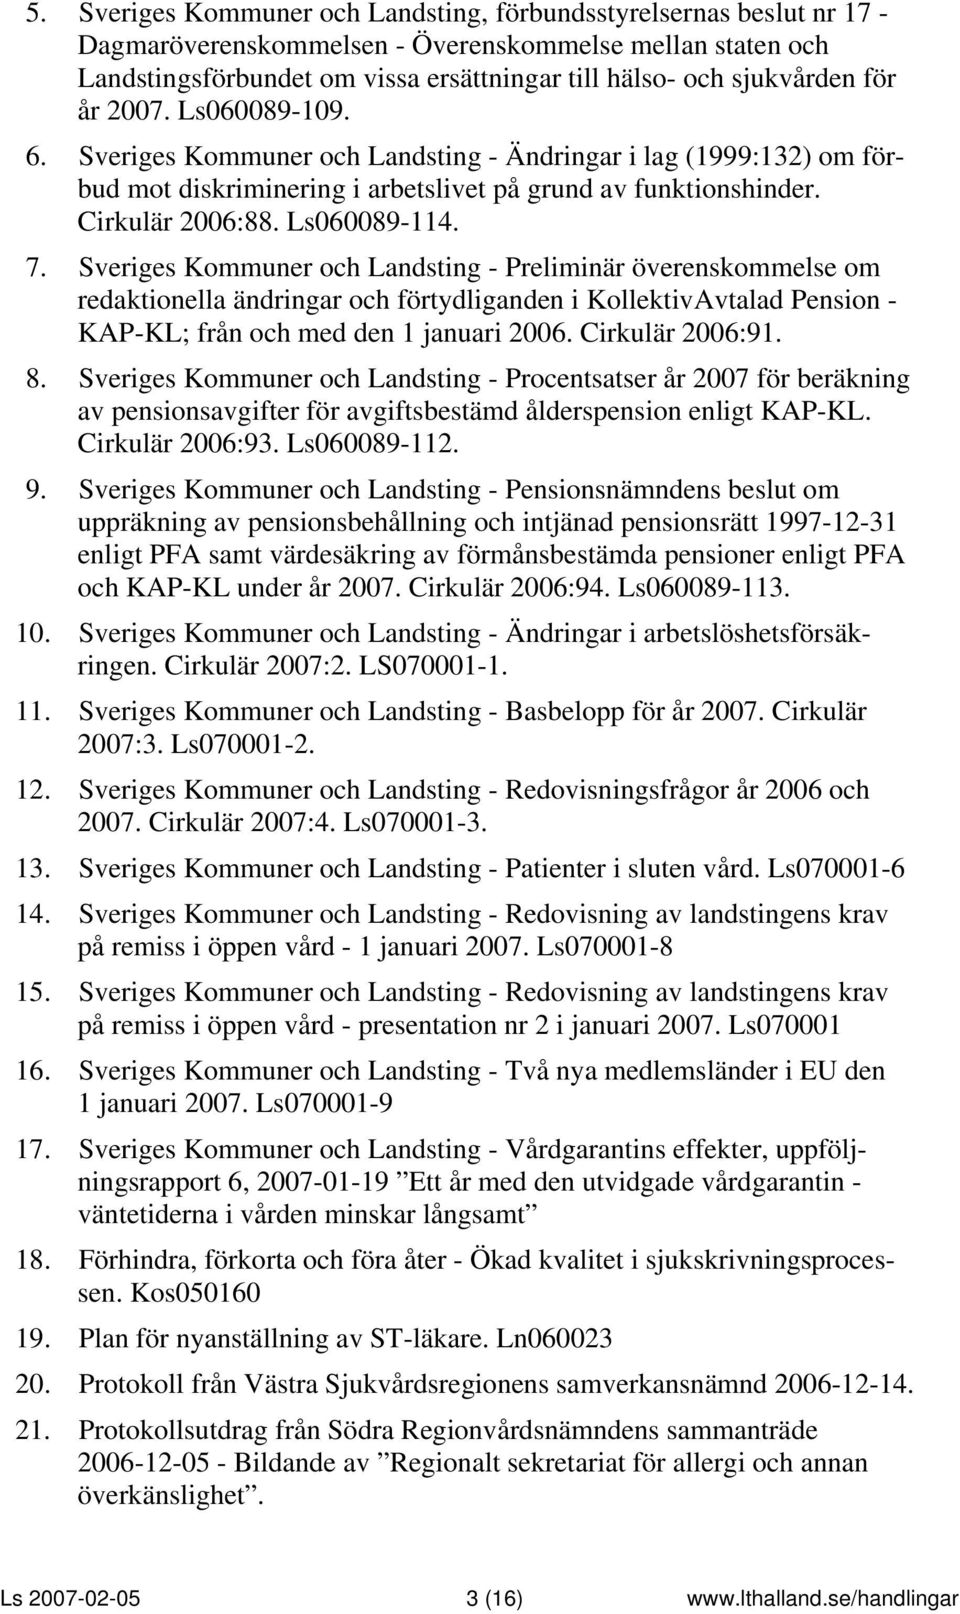 Sveriges Kommuner och Landsting - Preliminär överenskommelse om redaktionella ändringar och förtydliganden i KollektivAvtalad Pension - KAP-KL; från och med den 1 januari 2006. Cirkulär 2006:91. 8.